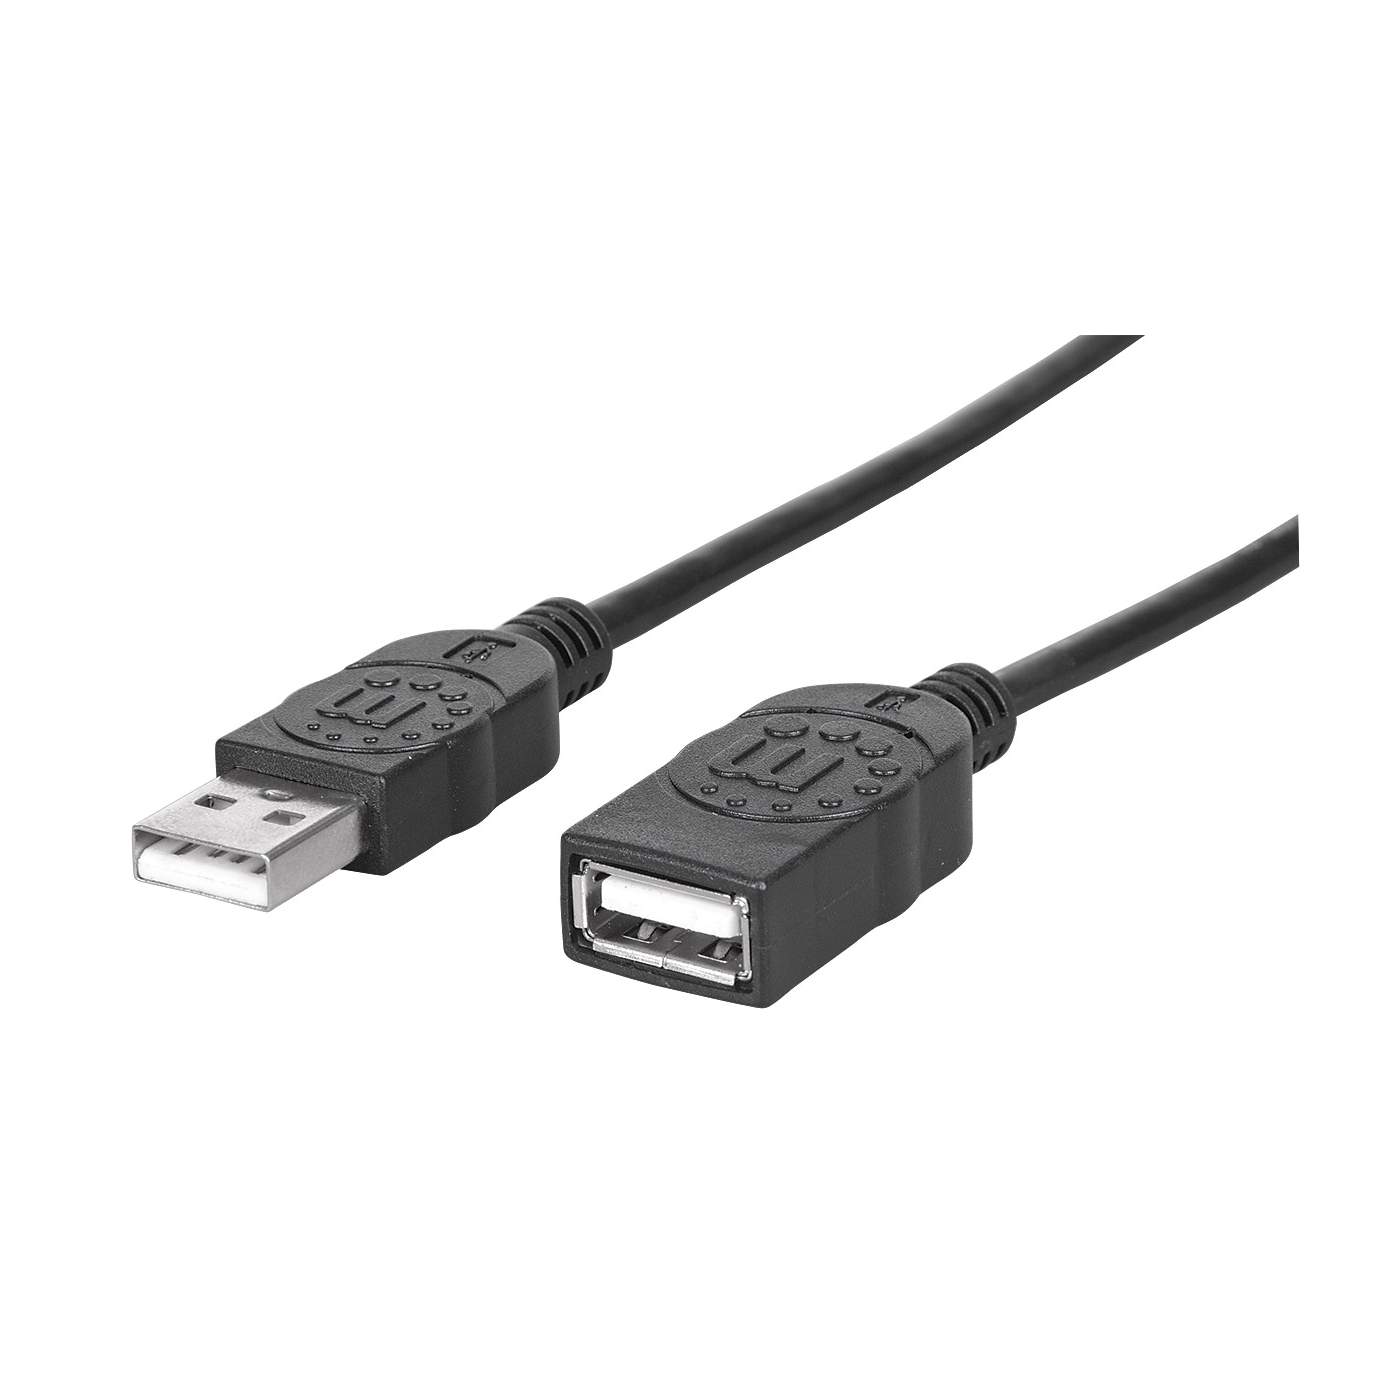 Accessoires informatiques: Câble USB 3.0 A vers B - long. 25cm - Astronomie  Pierro-Astro